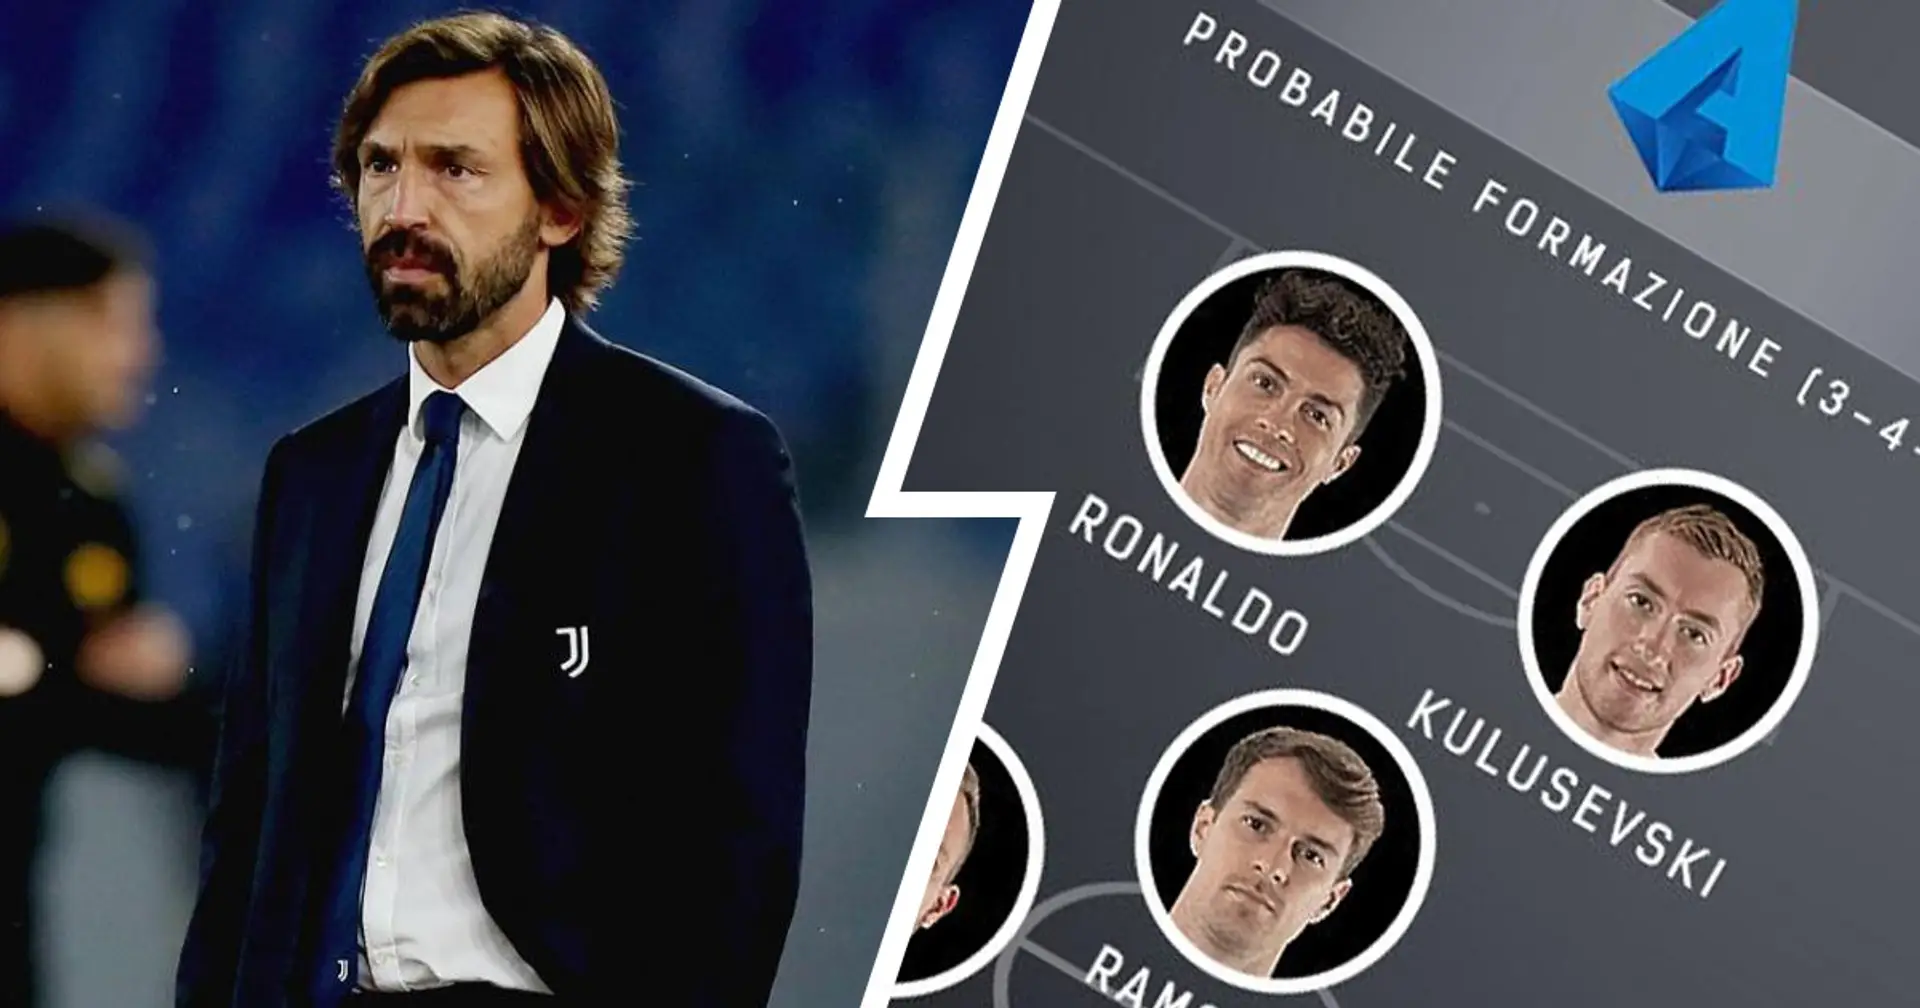 Le probabili formazioni di Juventus-Napoli: conferma per Ramsey, Kulusevski al fianco di CR7